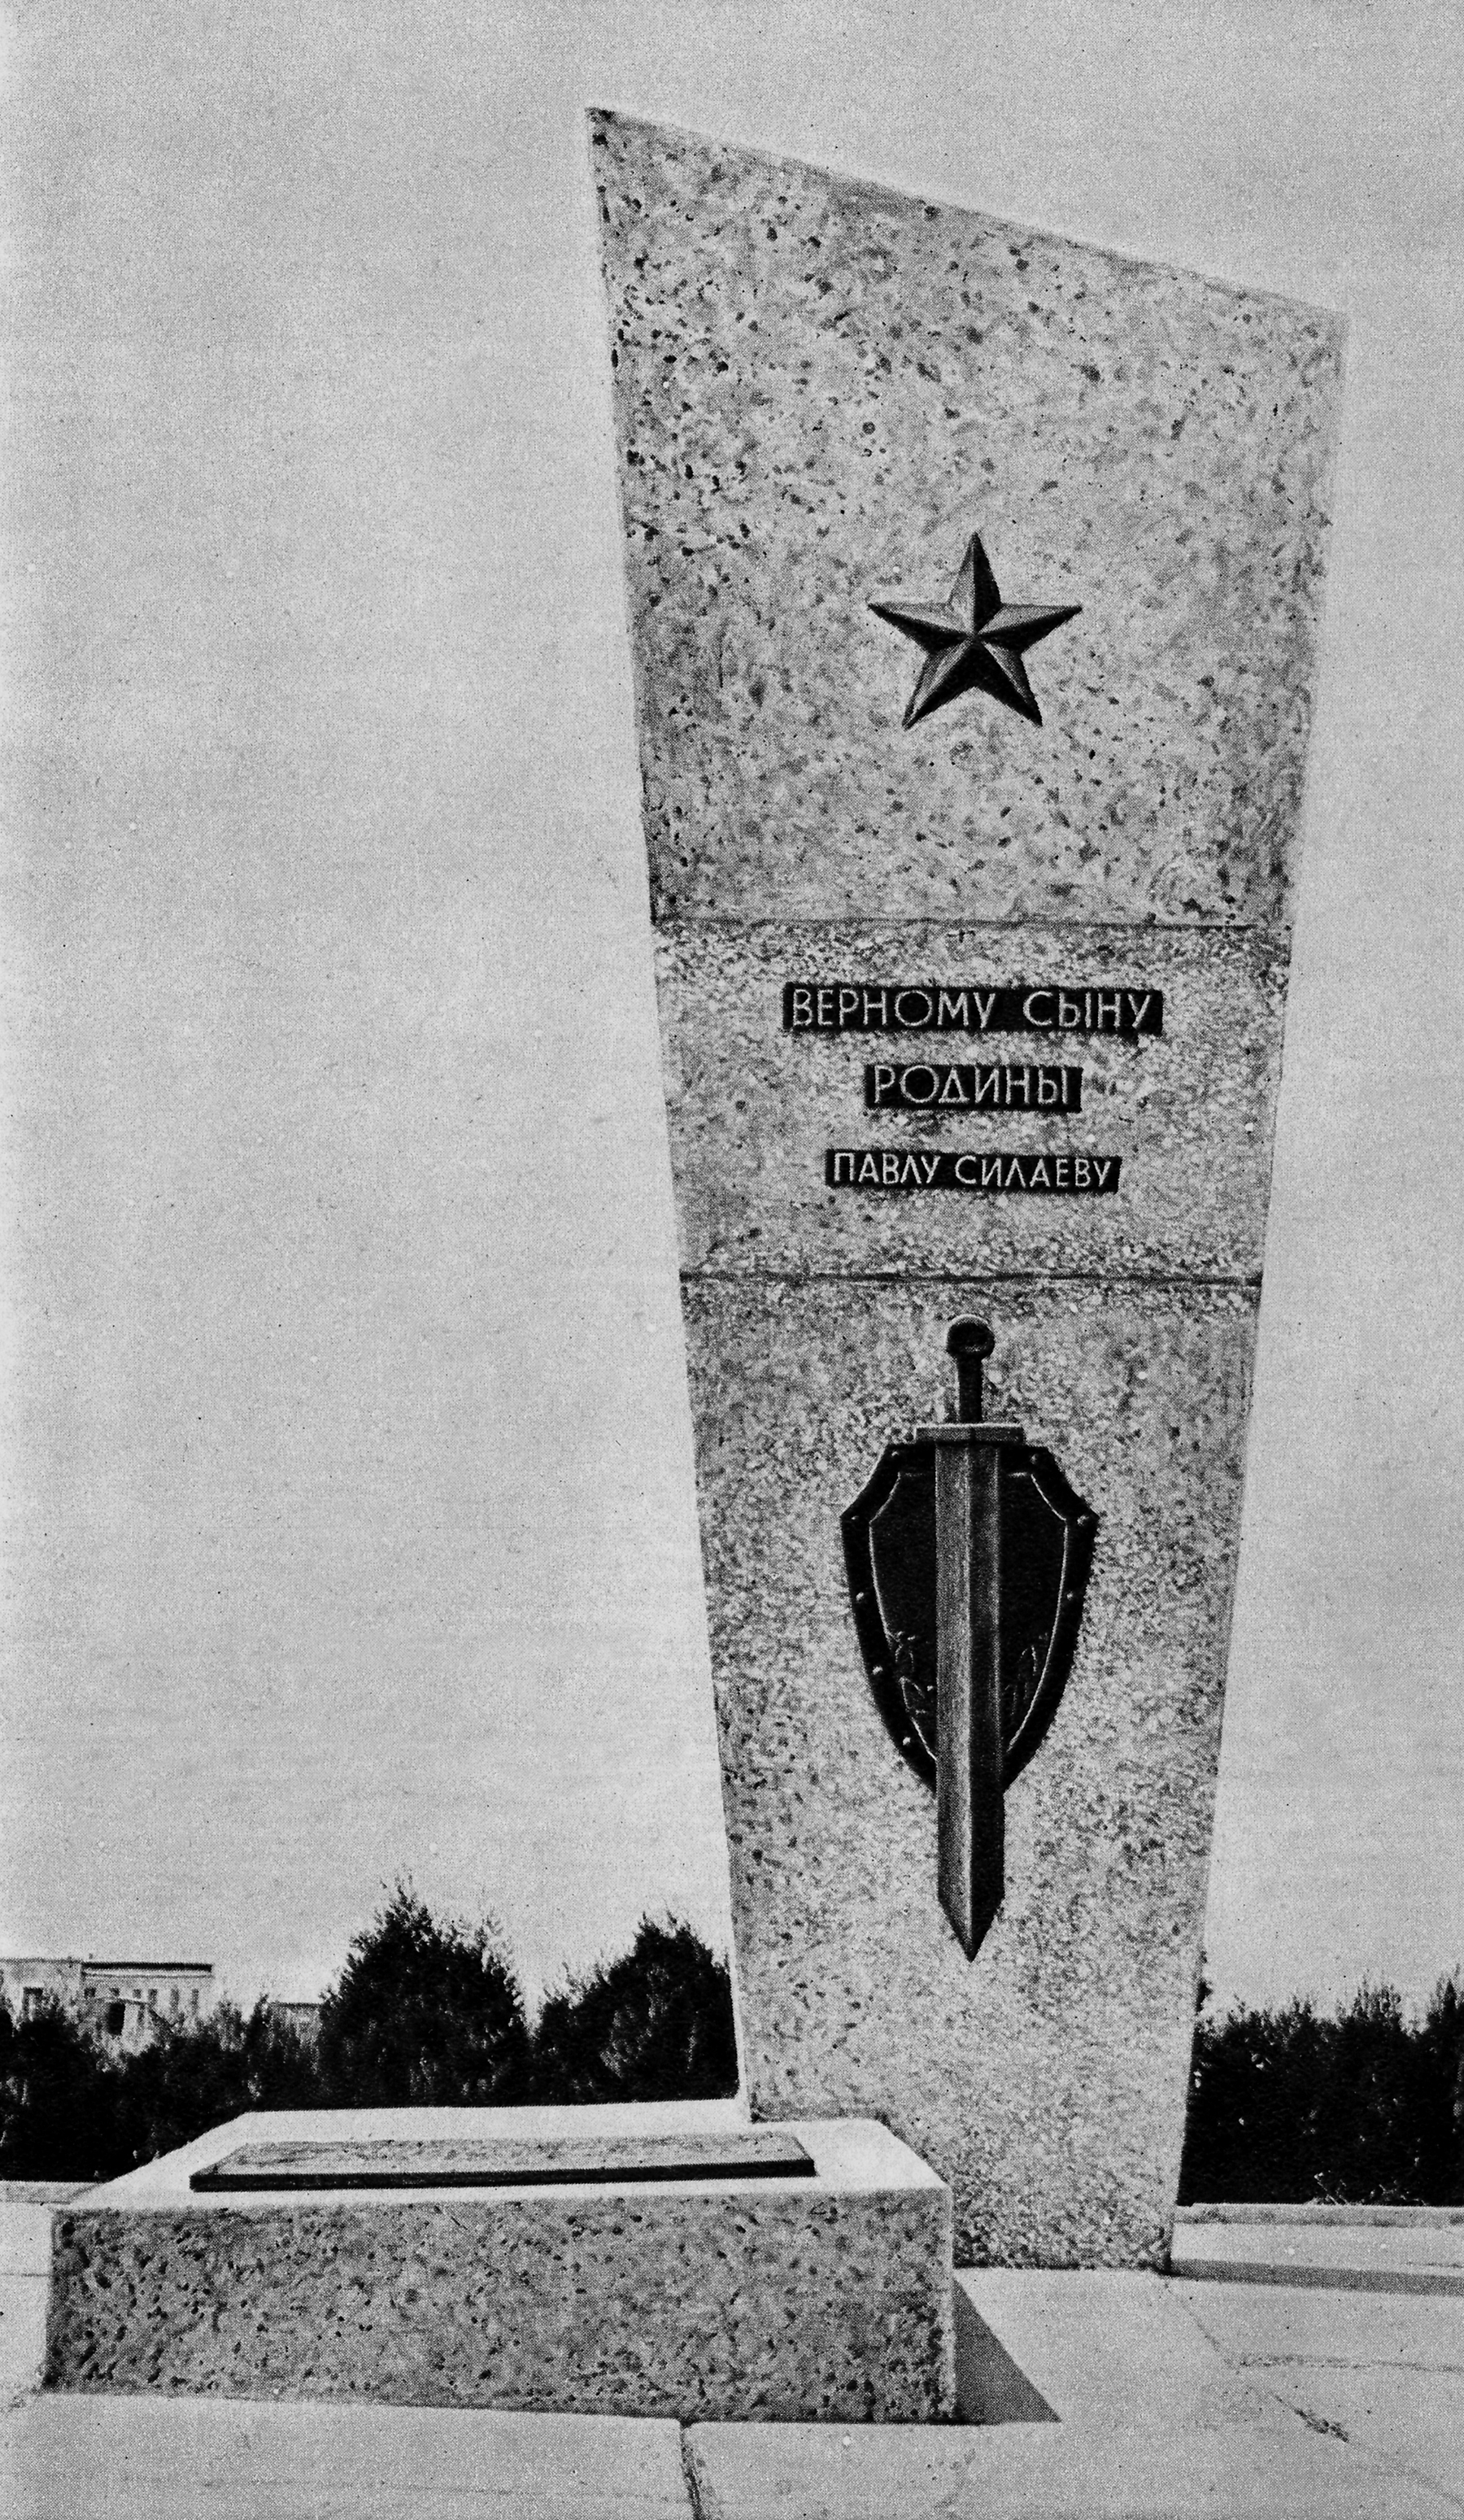  Памятник Павлу Силаеву, 70-е годы